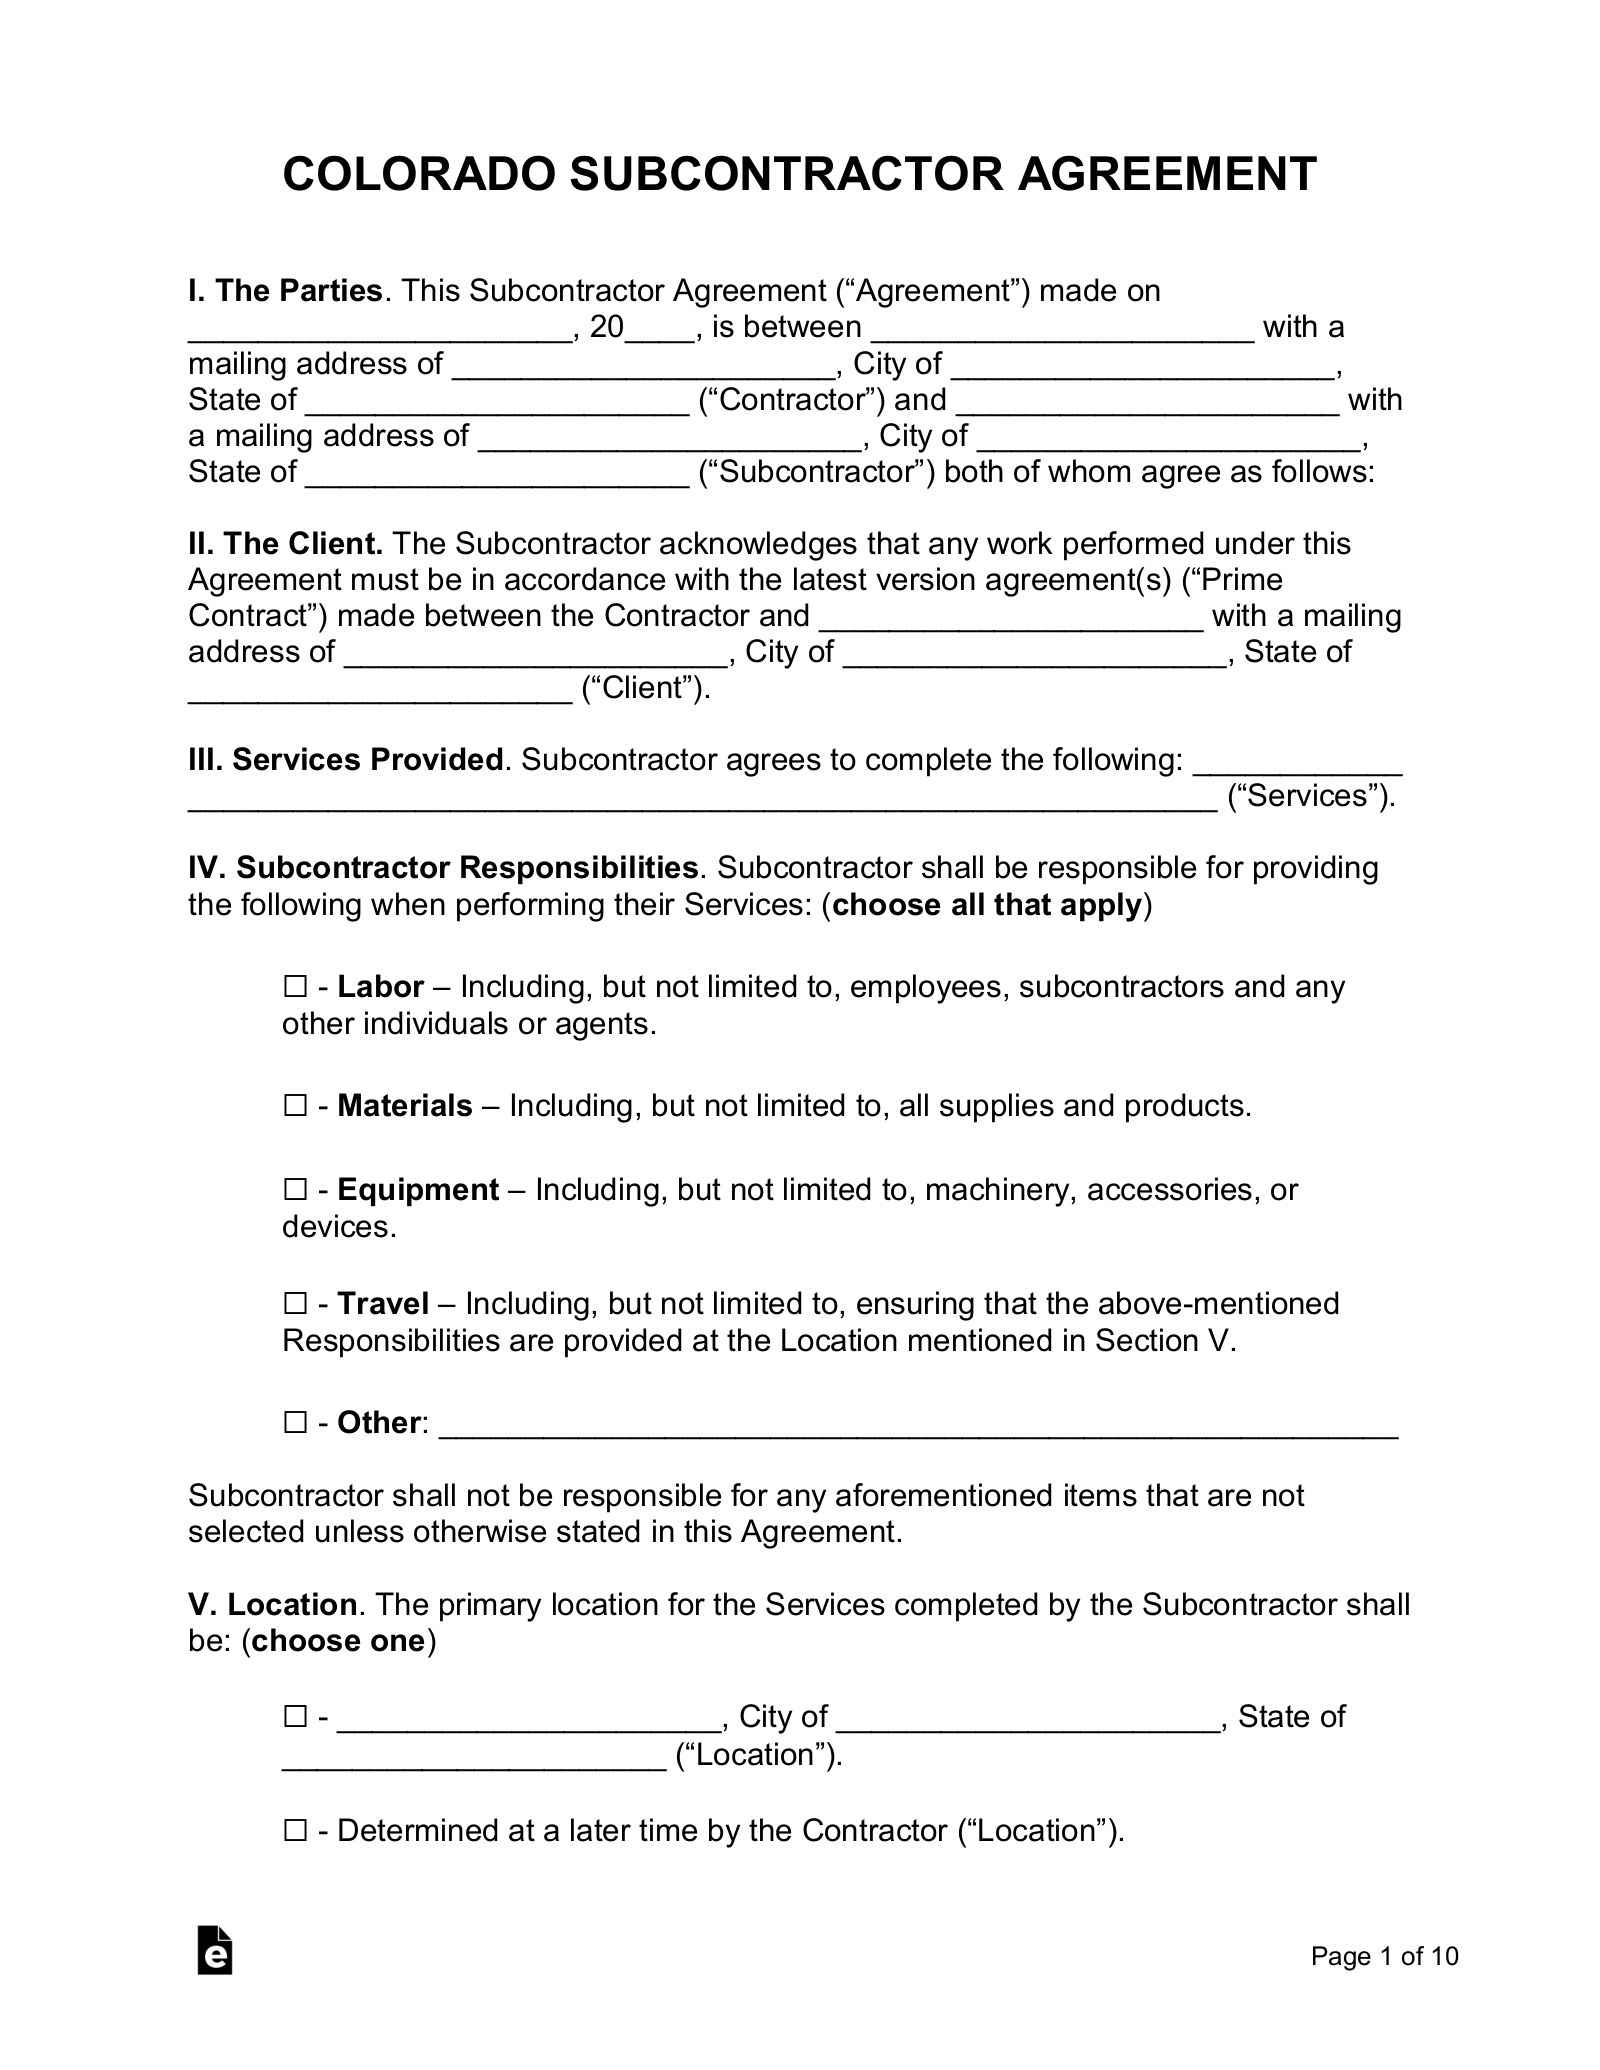 Colorado Subcontractor Agreement